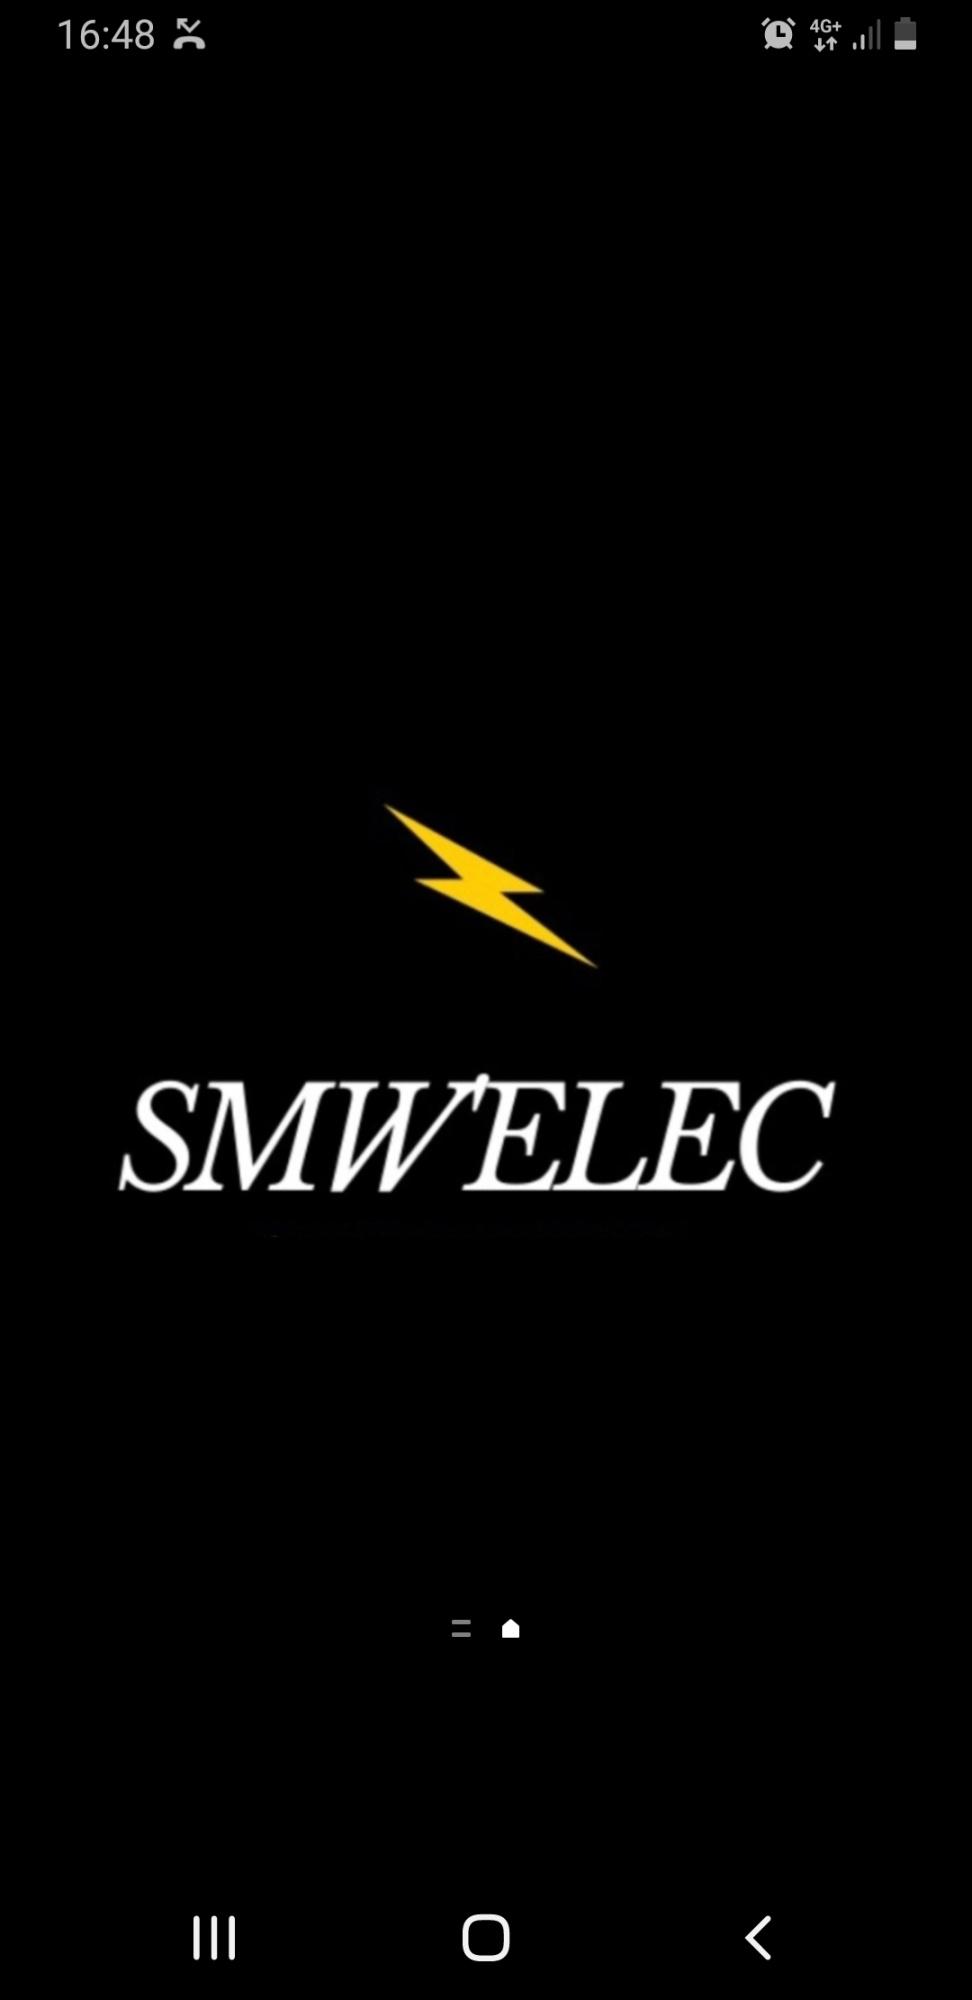 Smw’elec - Electricien Hadancourt Le Haut Clocher